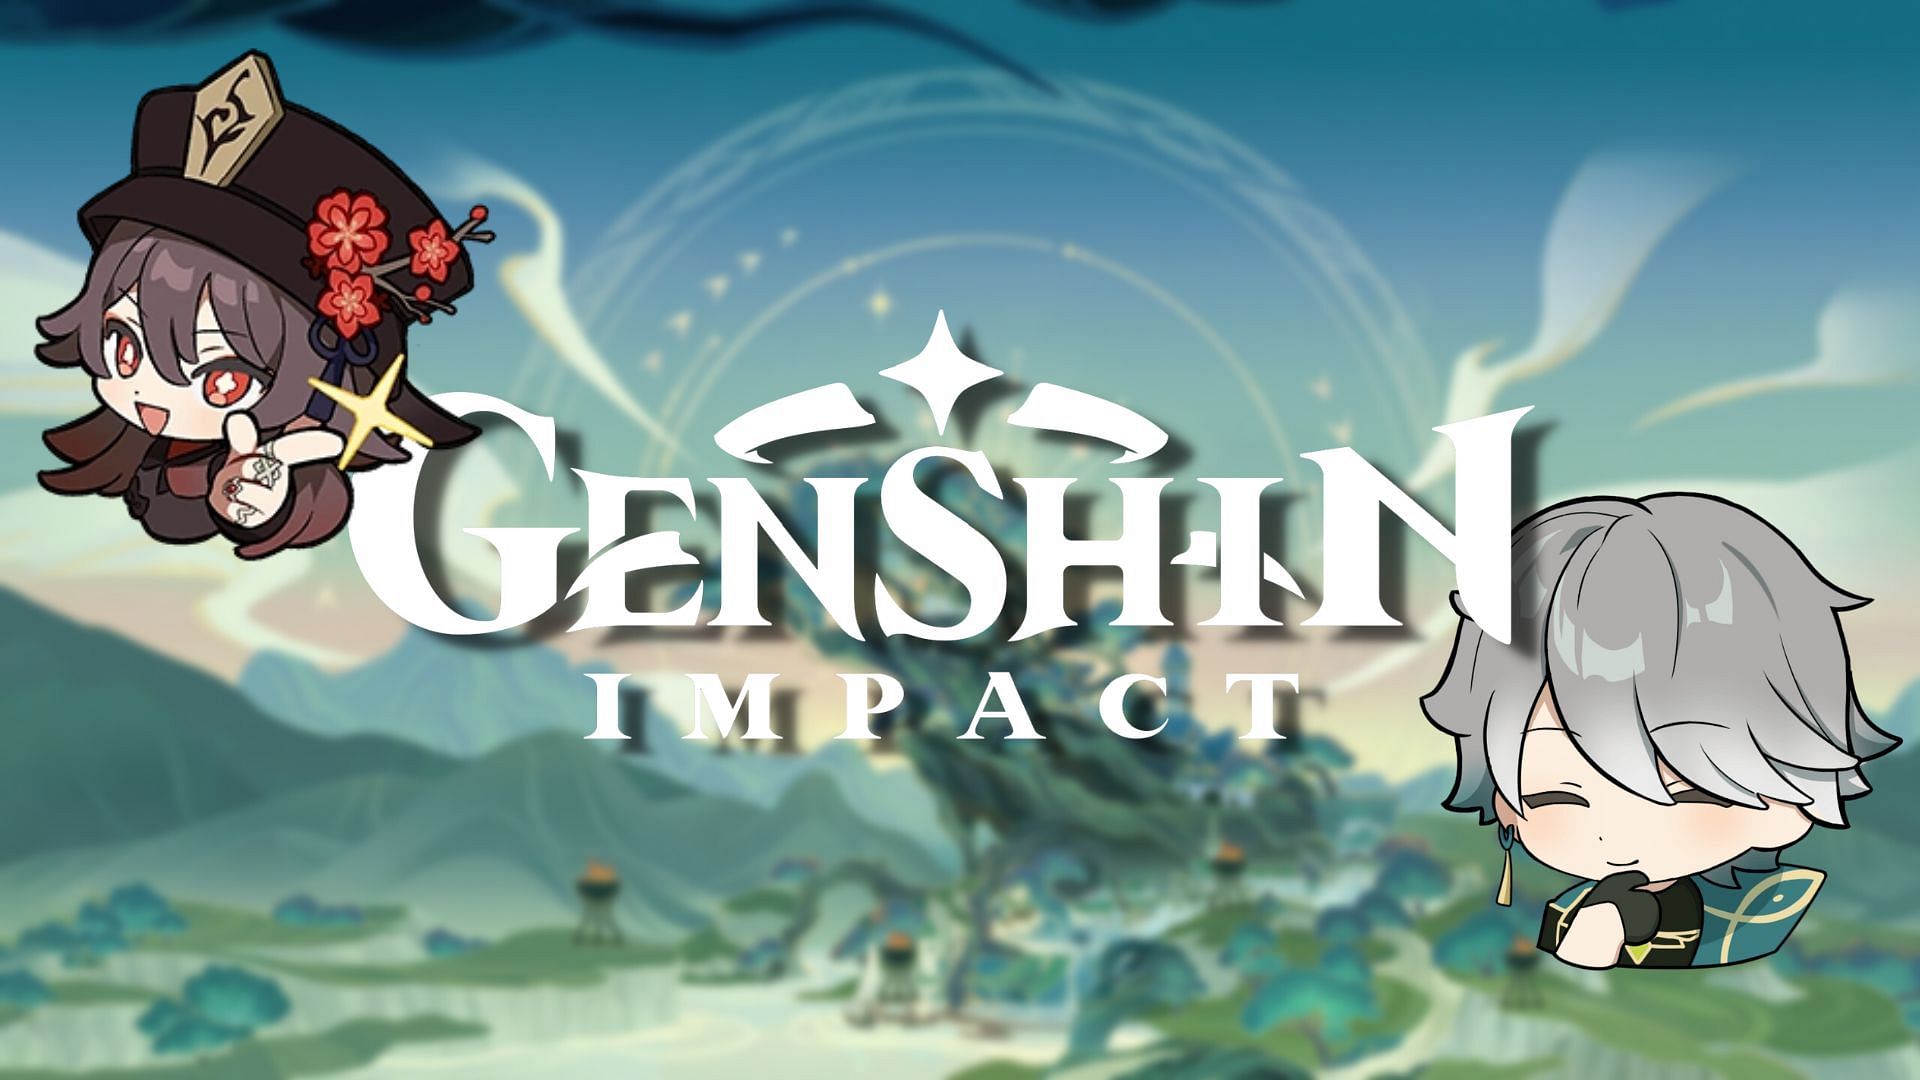 Hu Tao retorna a Genshin Impact no próximo banner, segundo rumor